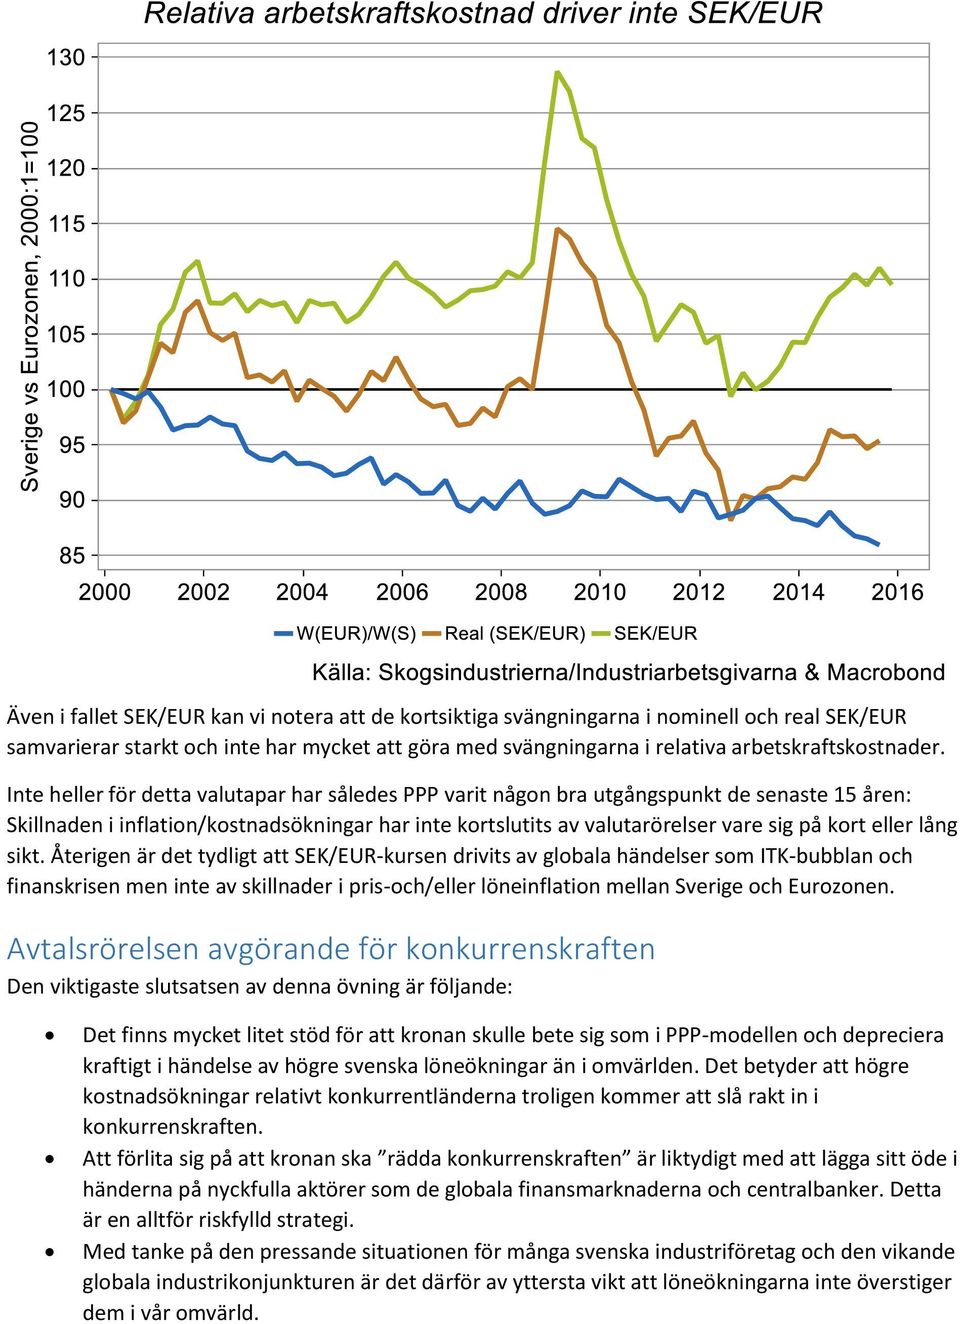 lång sikt. Återigen är det tydligt att SEK/EUR-kursen drivits av globala händelser som ITK-bubblan och finanskrisen men inte av skillnader i pris-och/eller löneinflation mellan Sverige och Eurozonen.